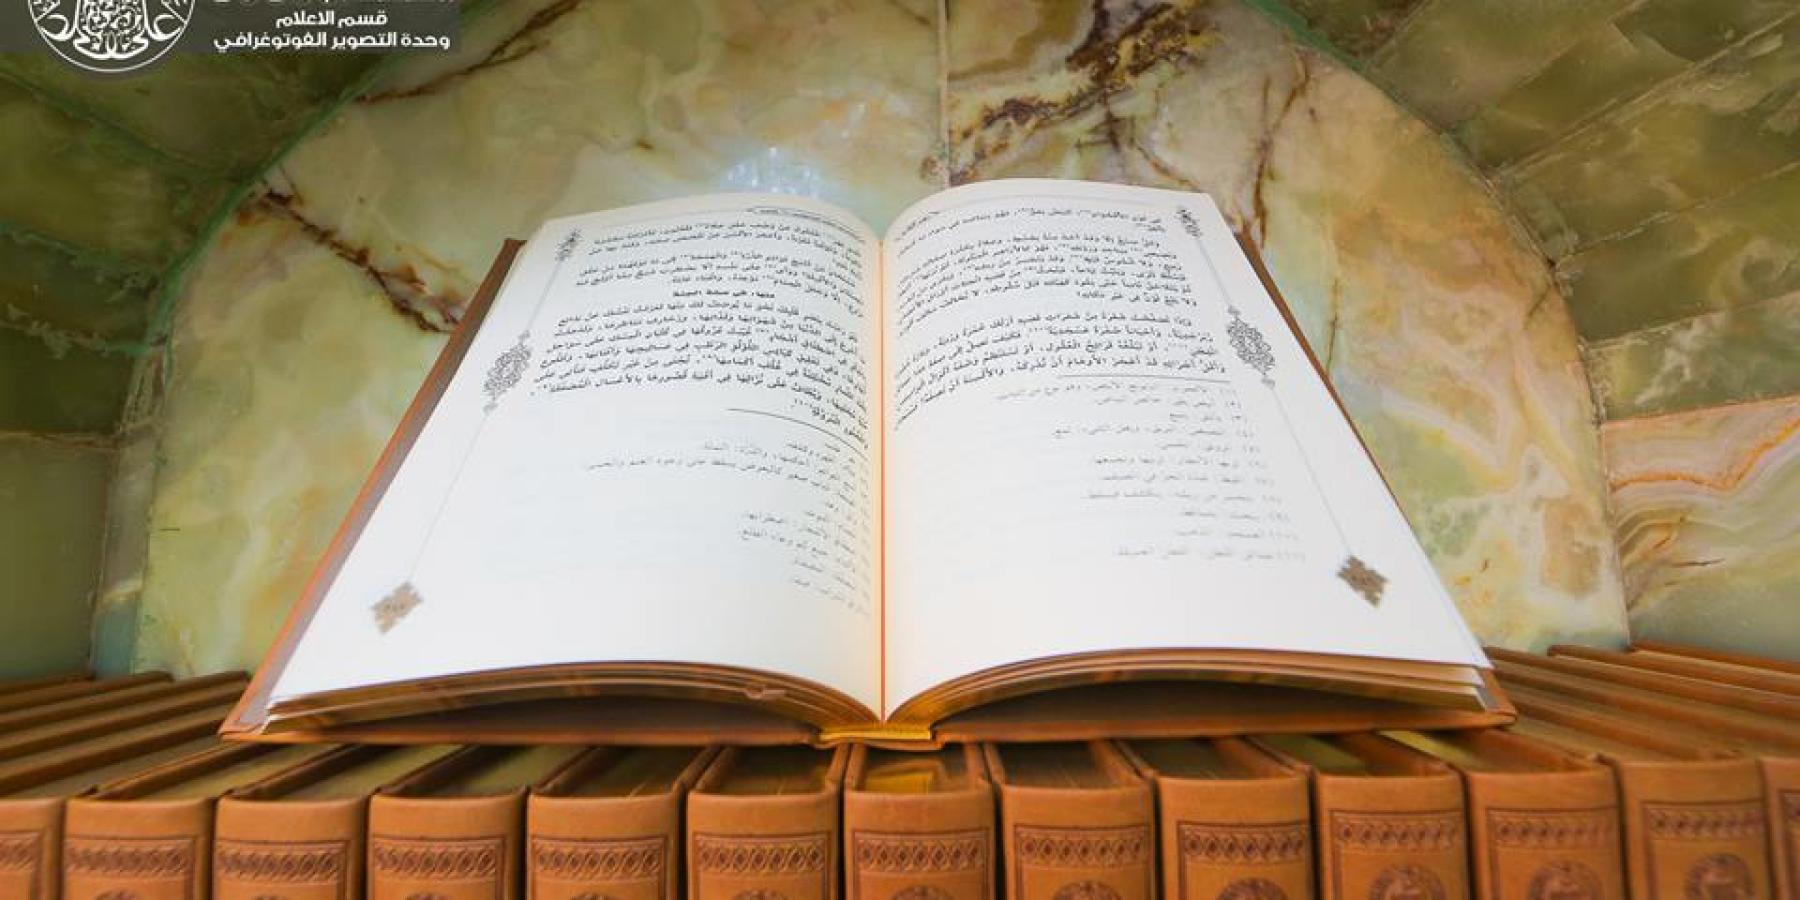 نشر 300 نسخة من كتاب نهج البلاغة في أروقة الحرم العلوي الطاهر والصحن الحيدري الشريف